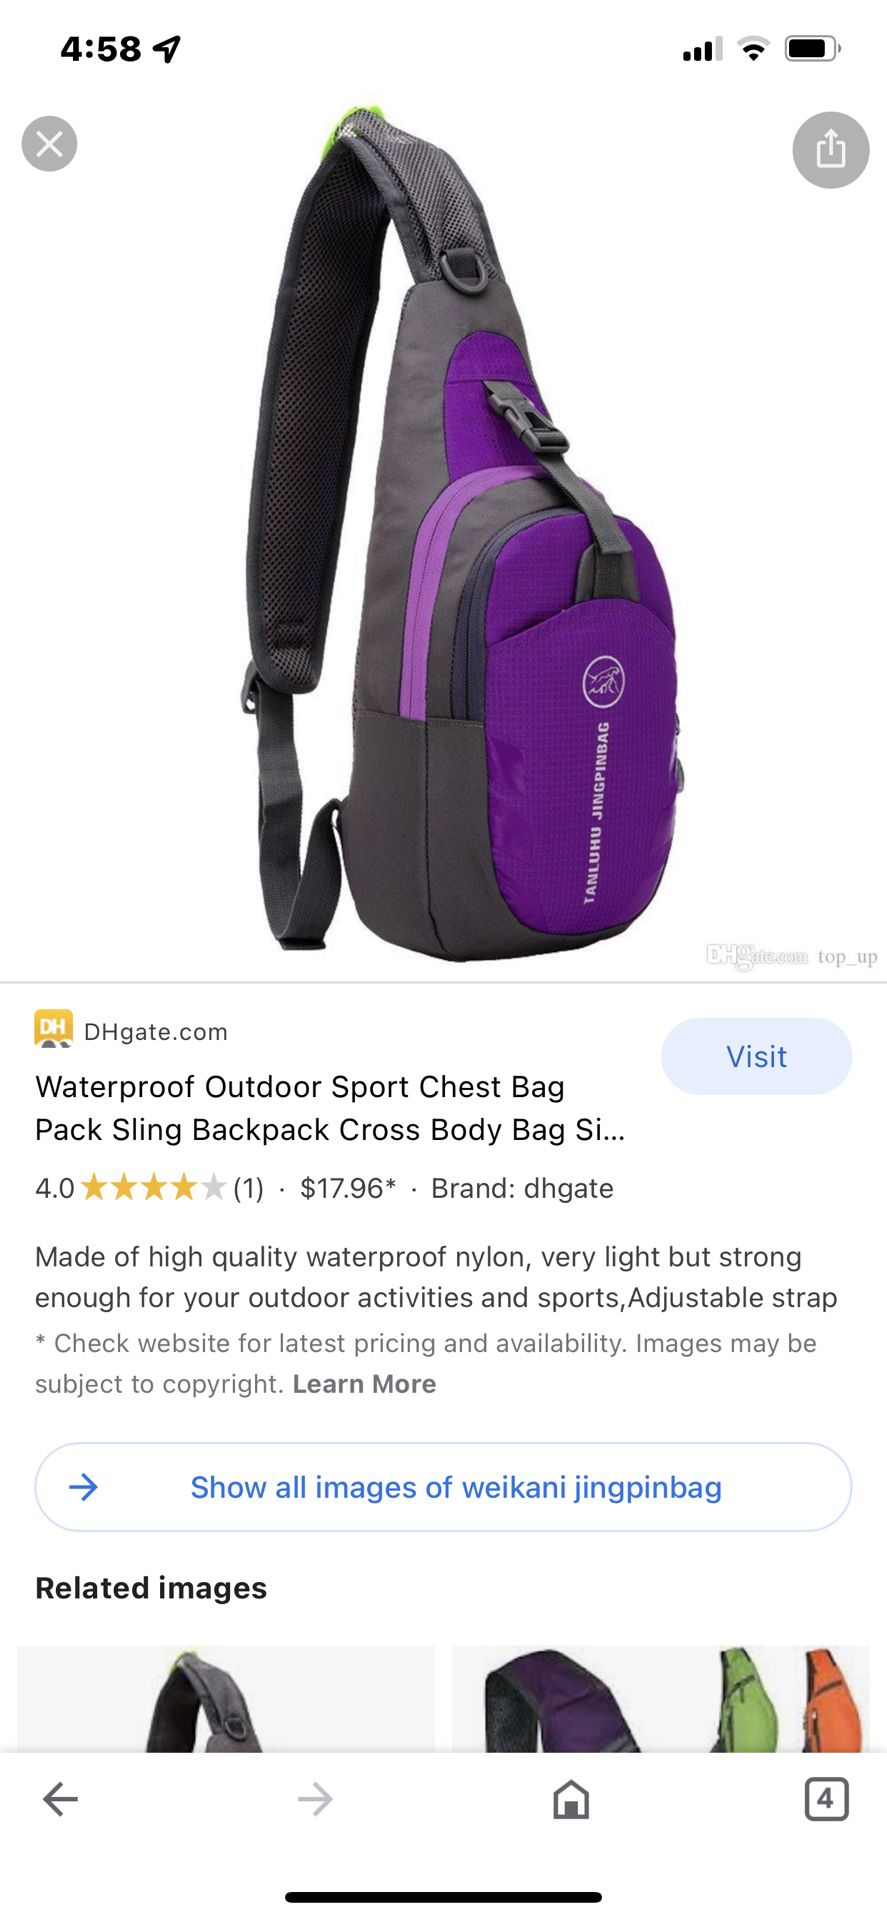 Waterproof crossover backpack